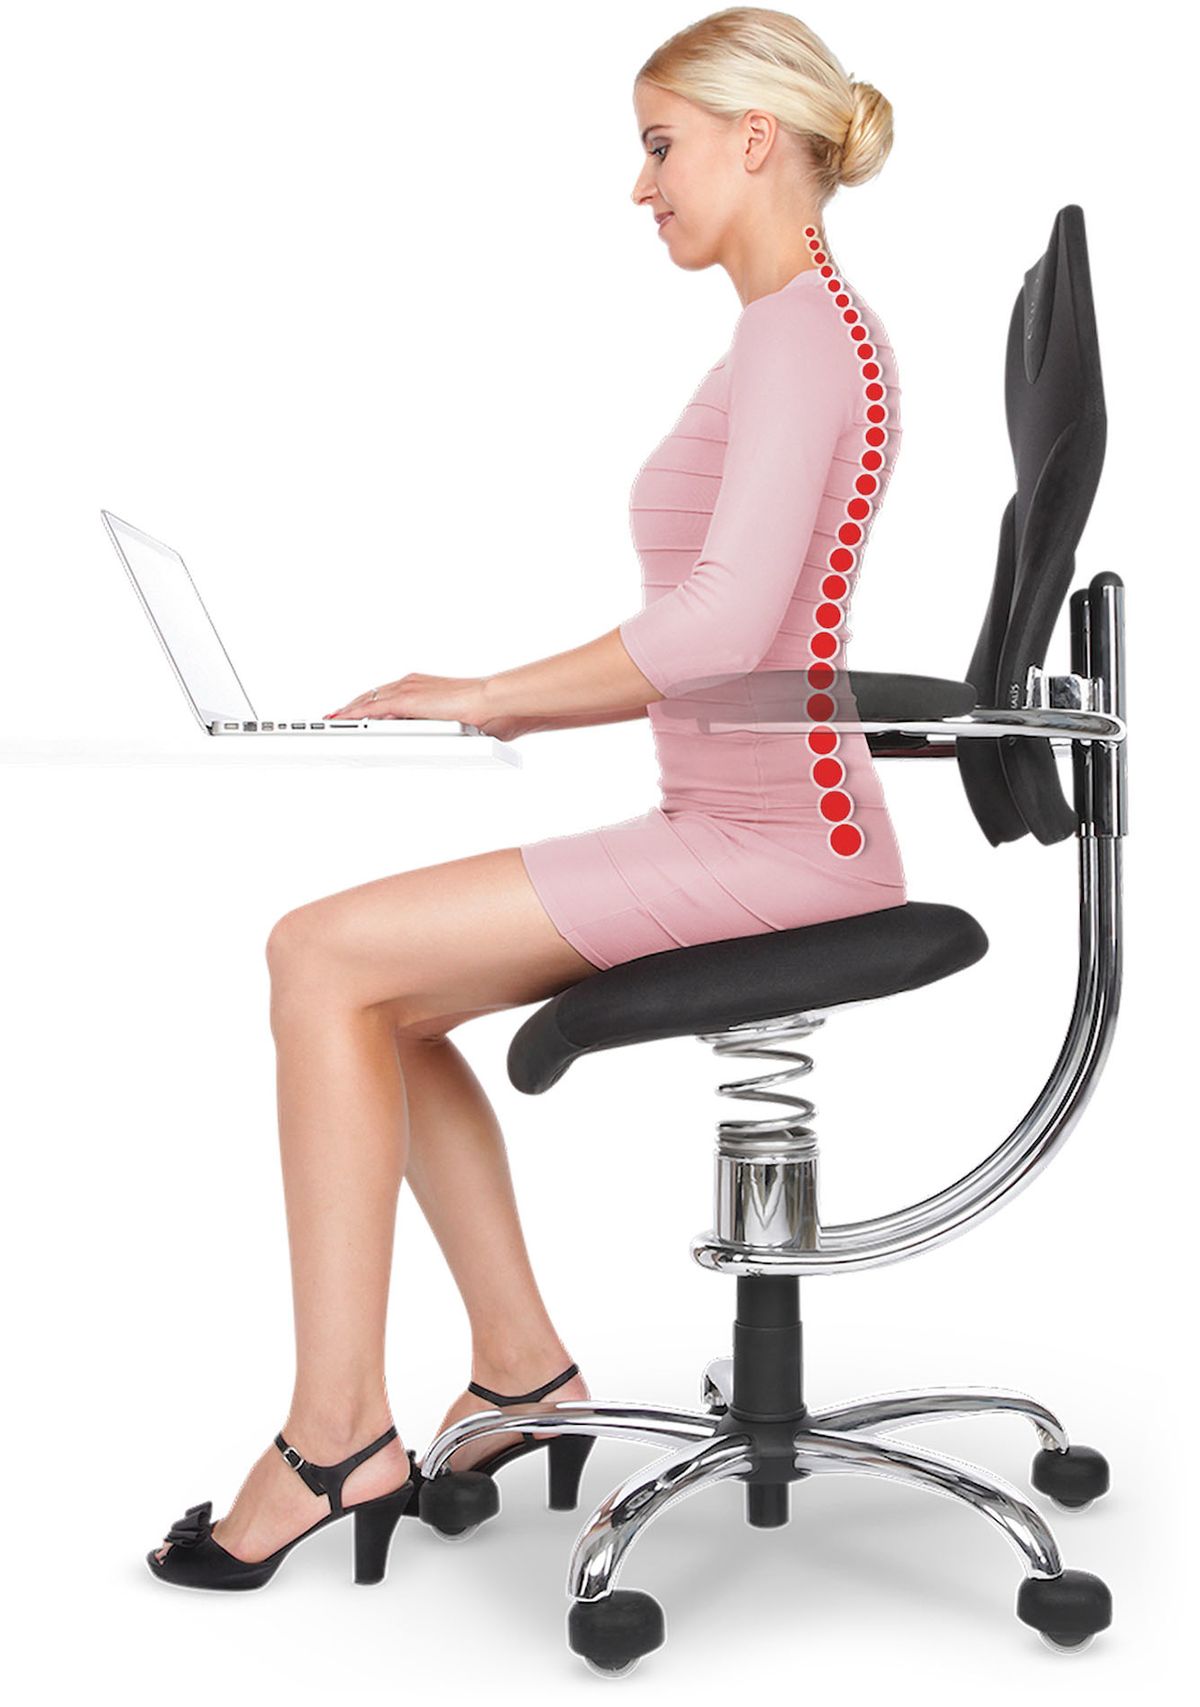 Zdravotní židle SpinaliS jsou vybaveny čtvrtou generací pružinového systému. Výkyvný sedák na pružině umožňuje vzpřímené sezení a současně volný pohyb pánve do všech stran.